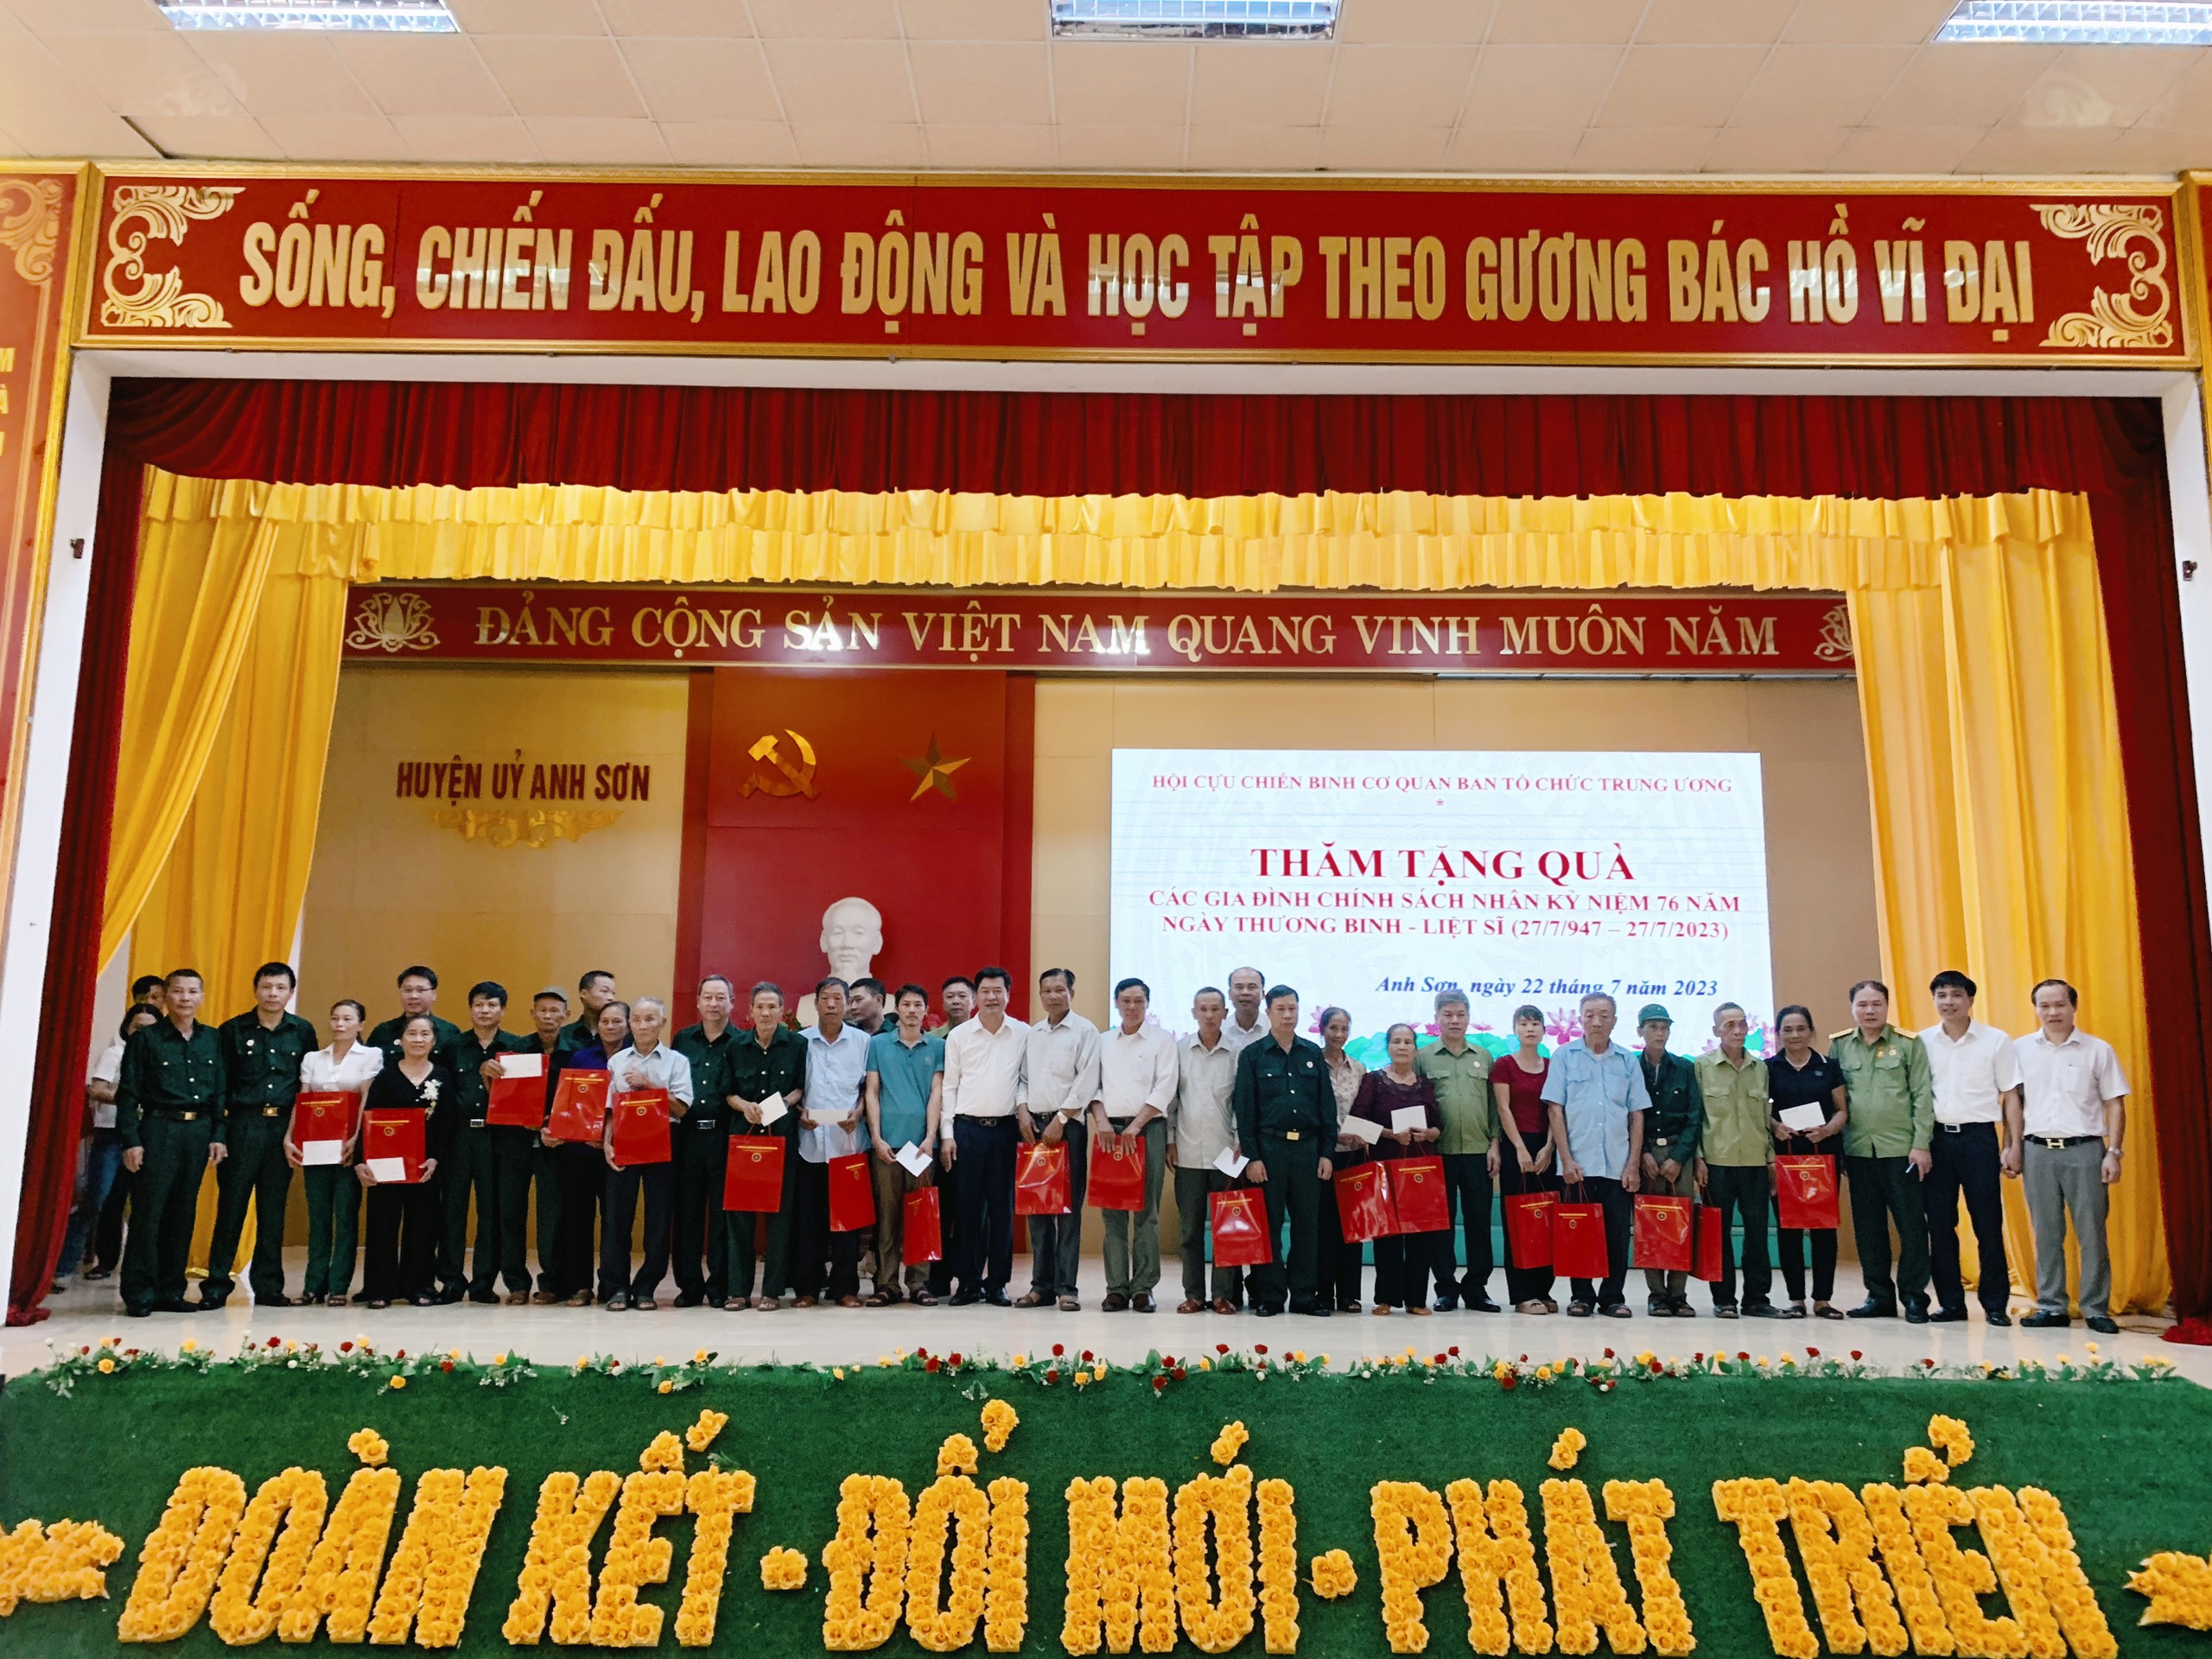 Đoàn công tác đã trao tặng 20 suất quà cho các hộ gia đình chính sách tại huyện Anh Sơn, tỉnh Nghệ An.